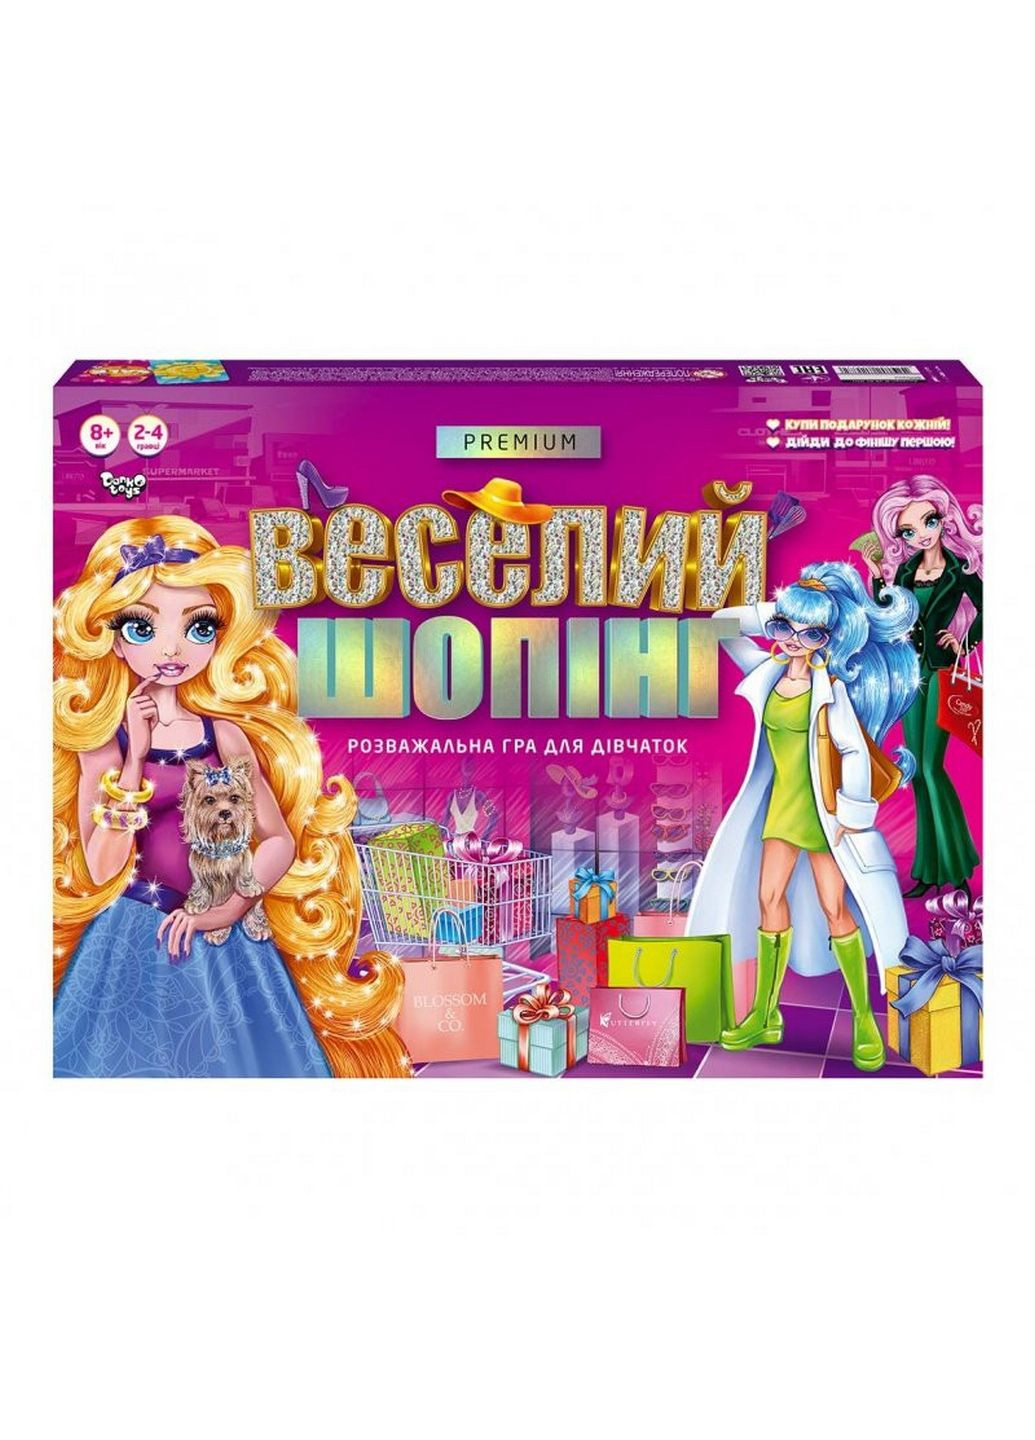 Настольная развлекательная игра "Веселый шопинг Premium" укр От 6 лет Danko Toys (289459789)